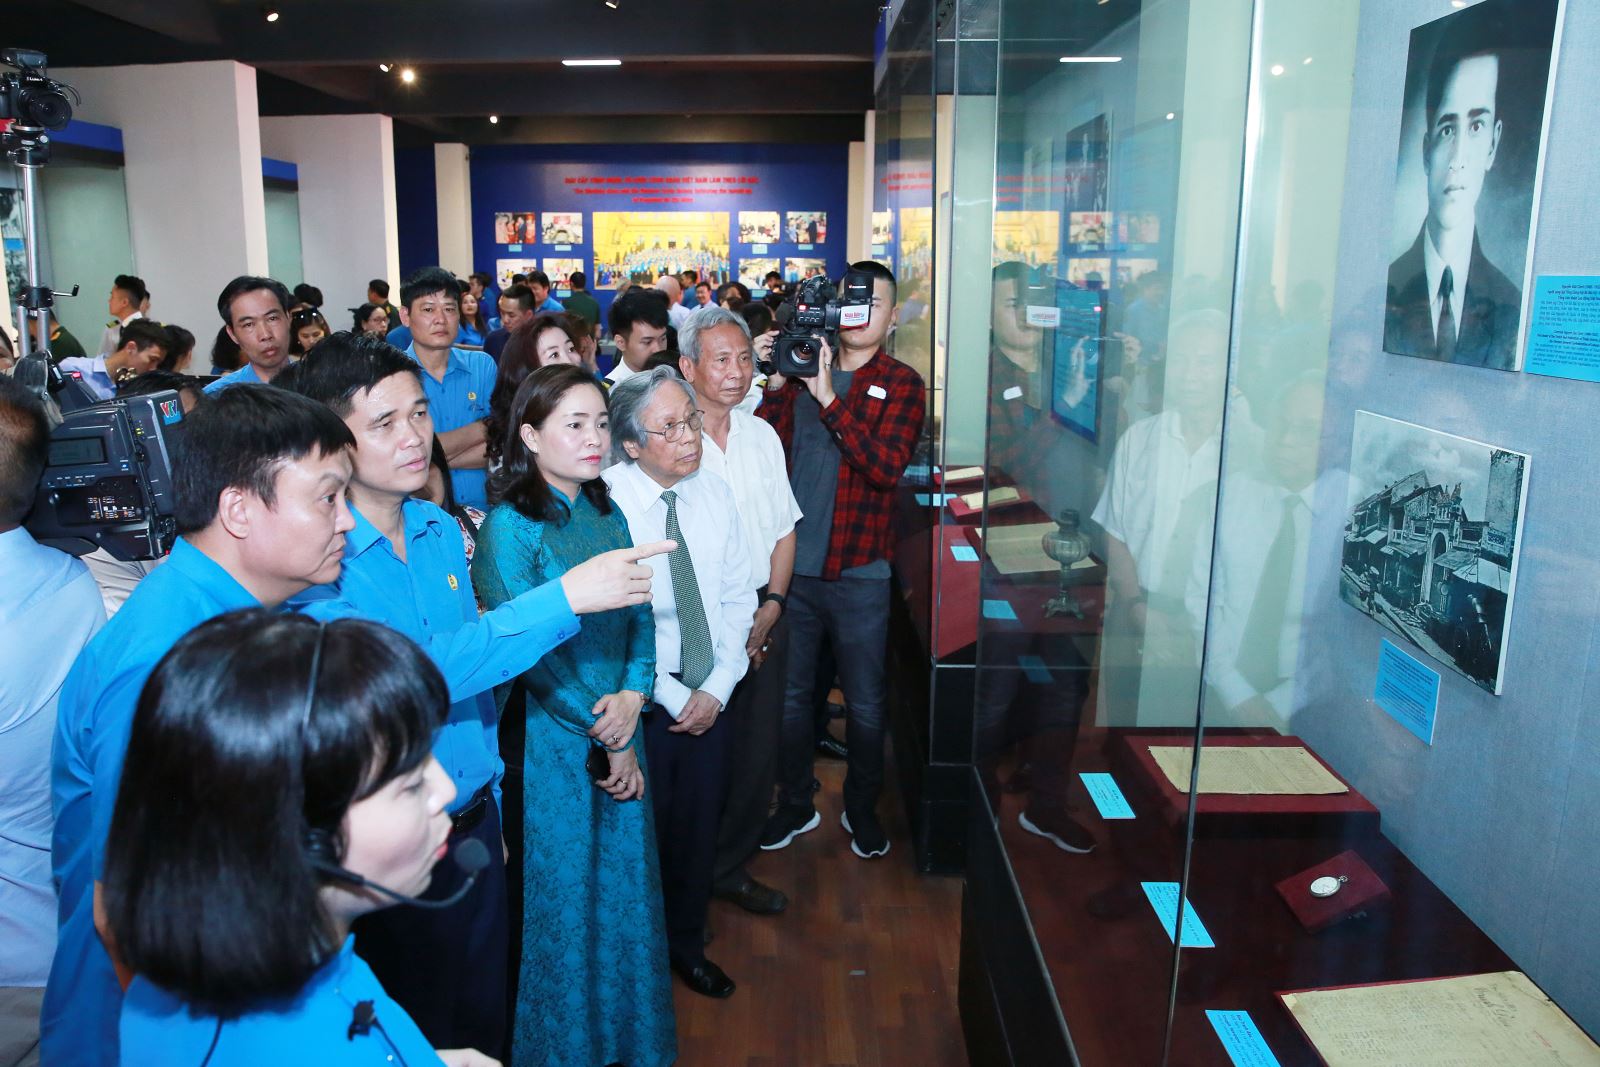 Trưng bày “Chủ tịch Hồ Chí Minh với giai cấp công nhân và tổ chức Công đoàn Việt Nam”tại Bảo tàng Lịch sử Quốc gia kéo dài đến hết tháng 8-2020